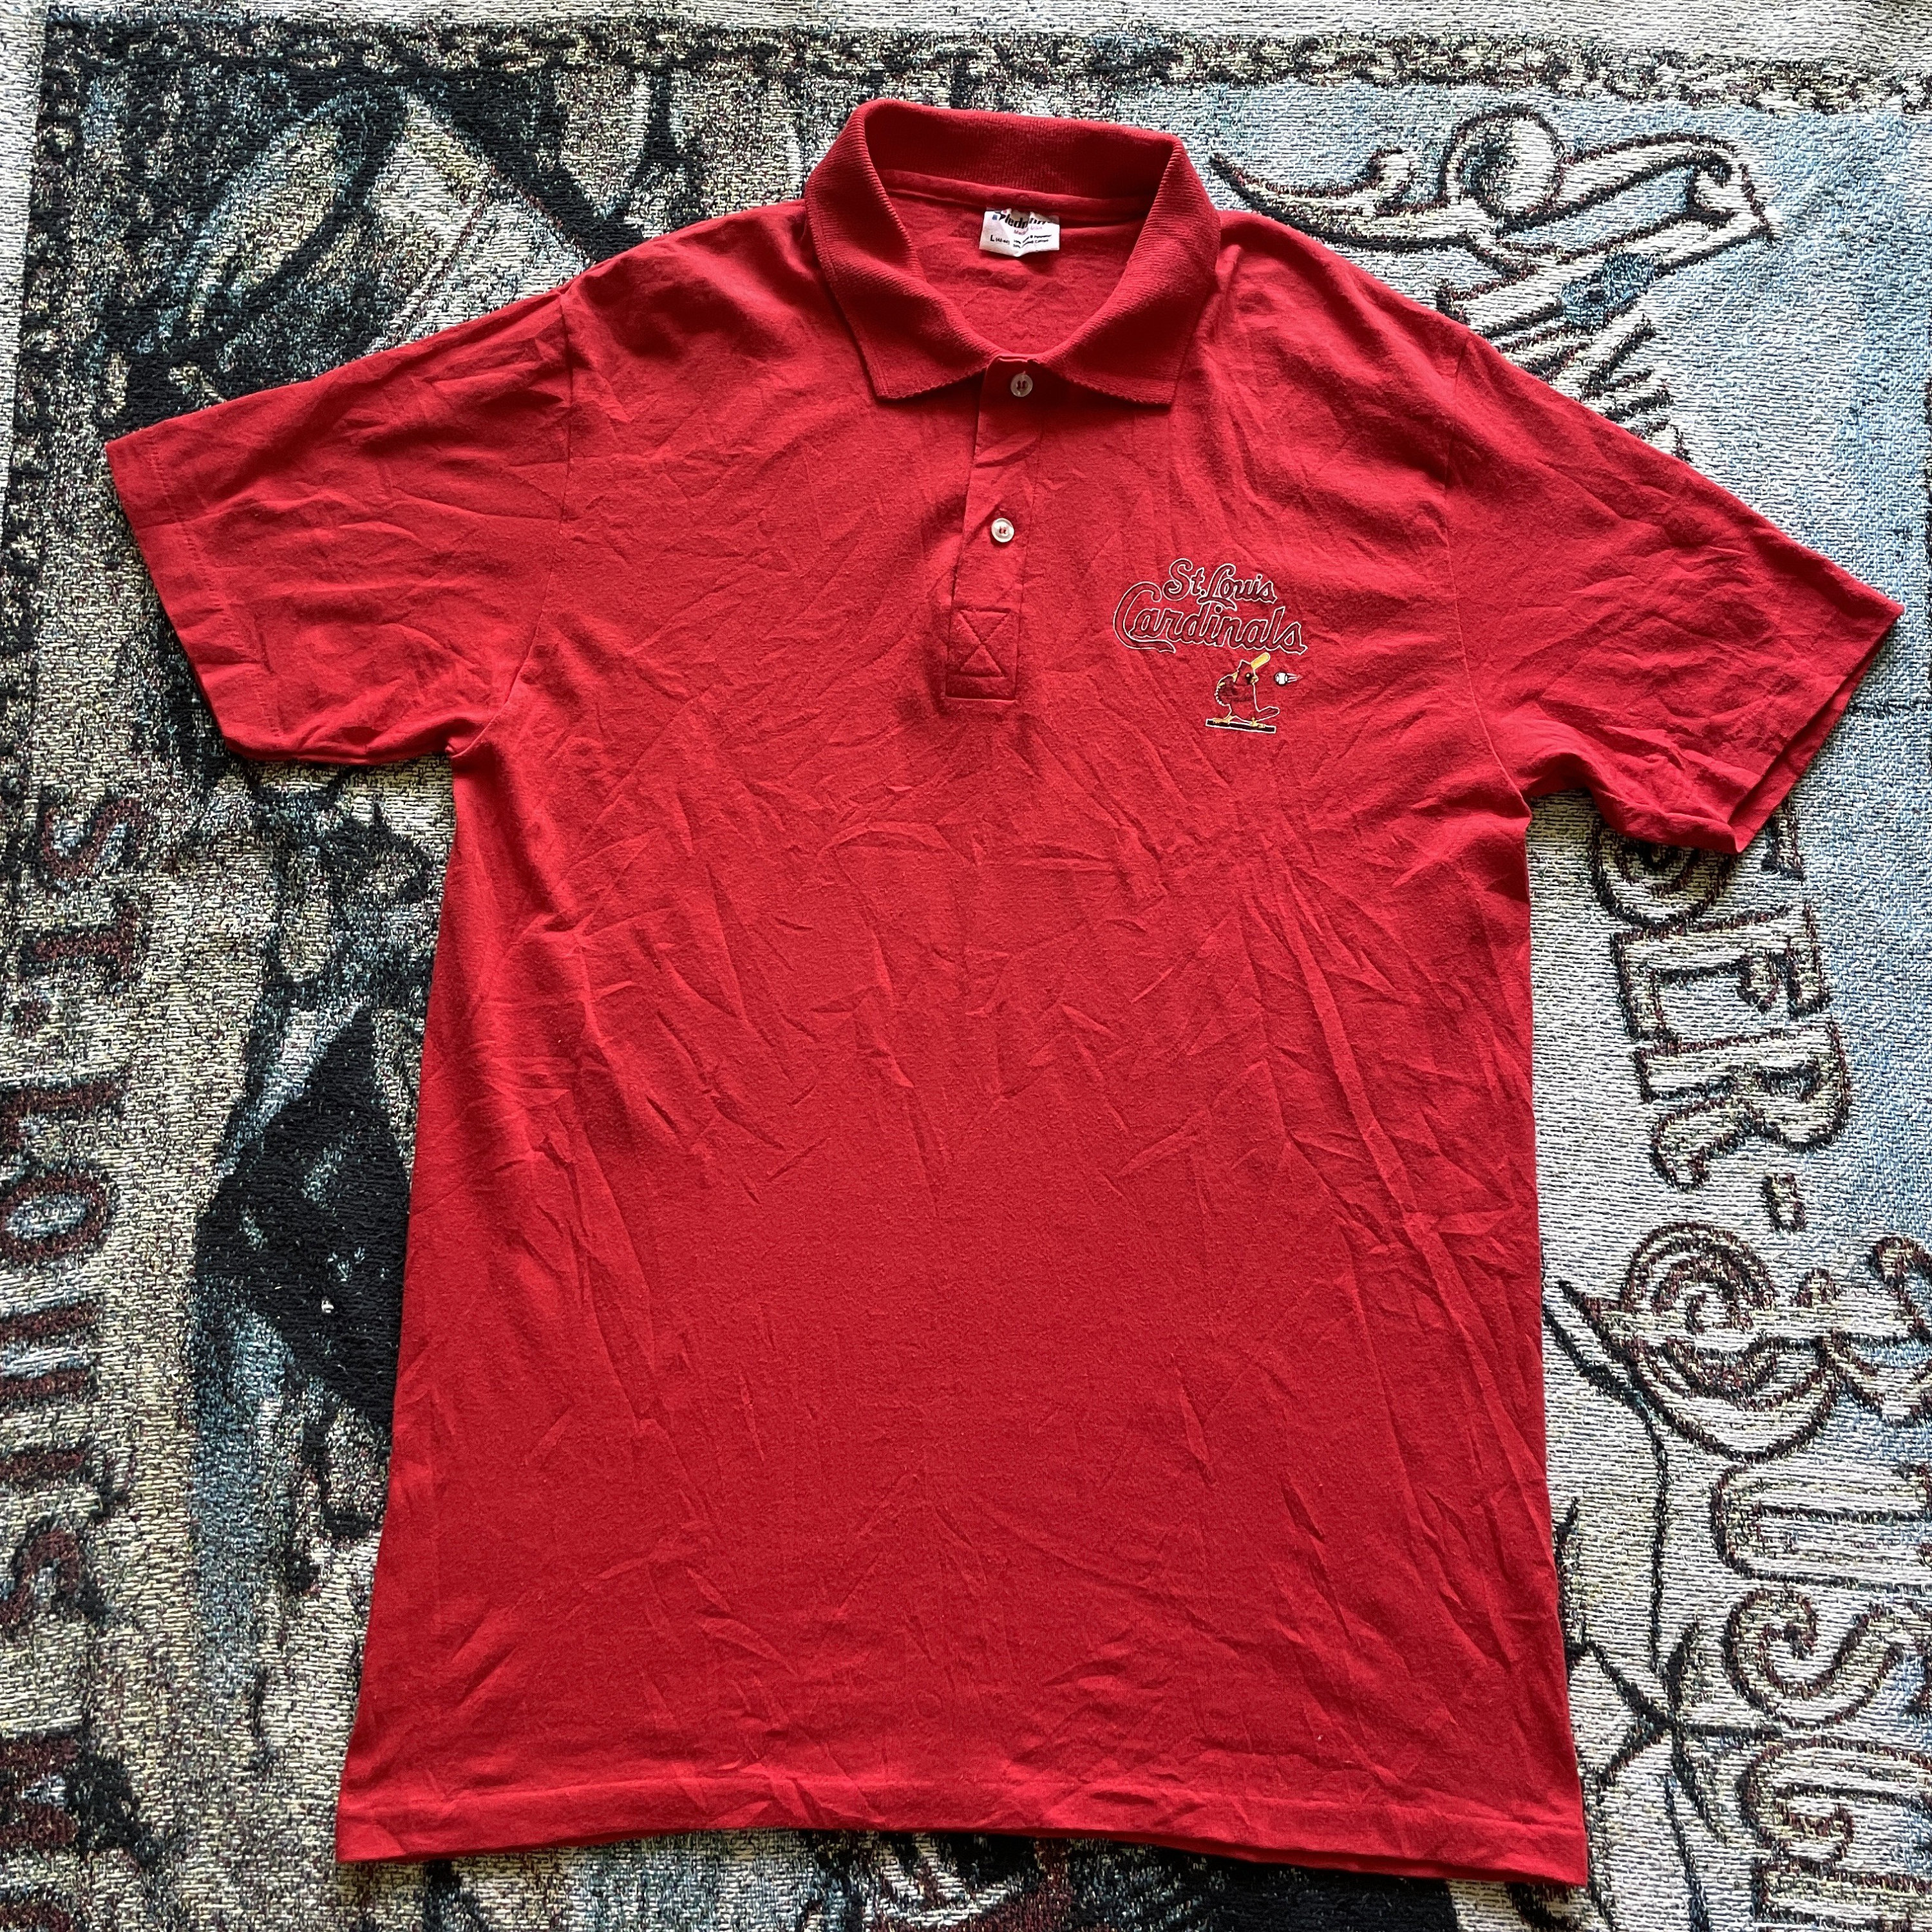 Vintage shirt, St. Louis Cardinals, Men's Fashion, Tops & Sets